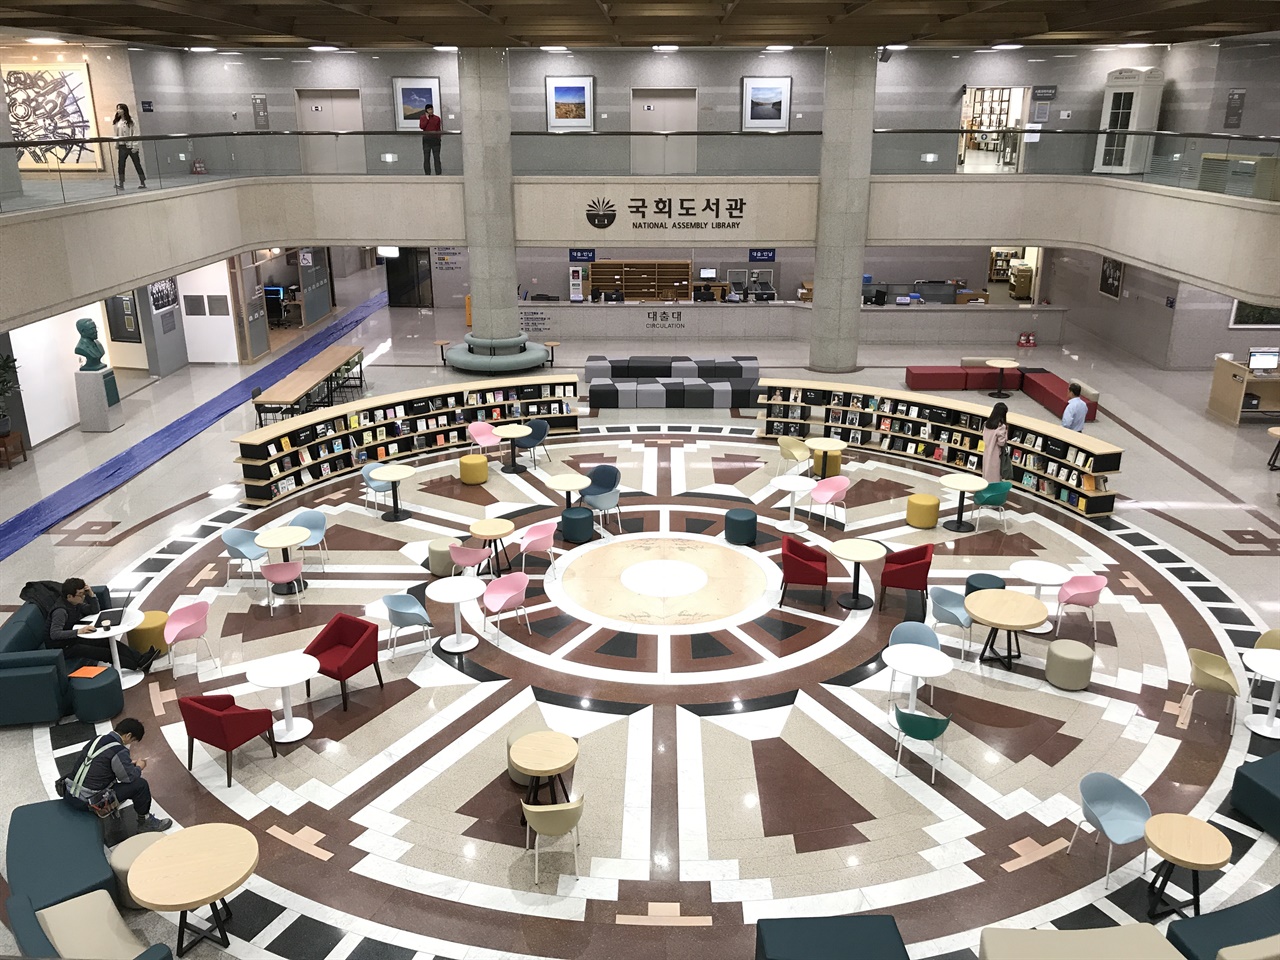 1988년 2월 20일 개관한 국회도서관은 지상에는 열람시설과 사무실을, 지하에는 강당과 회의실, 식당을 갖추고 있다. 도서관 주변에 야외 서가인 ‘숲속도서관’이 있다.